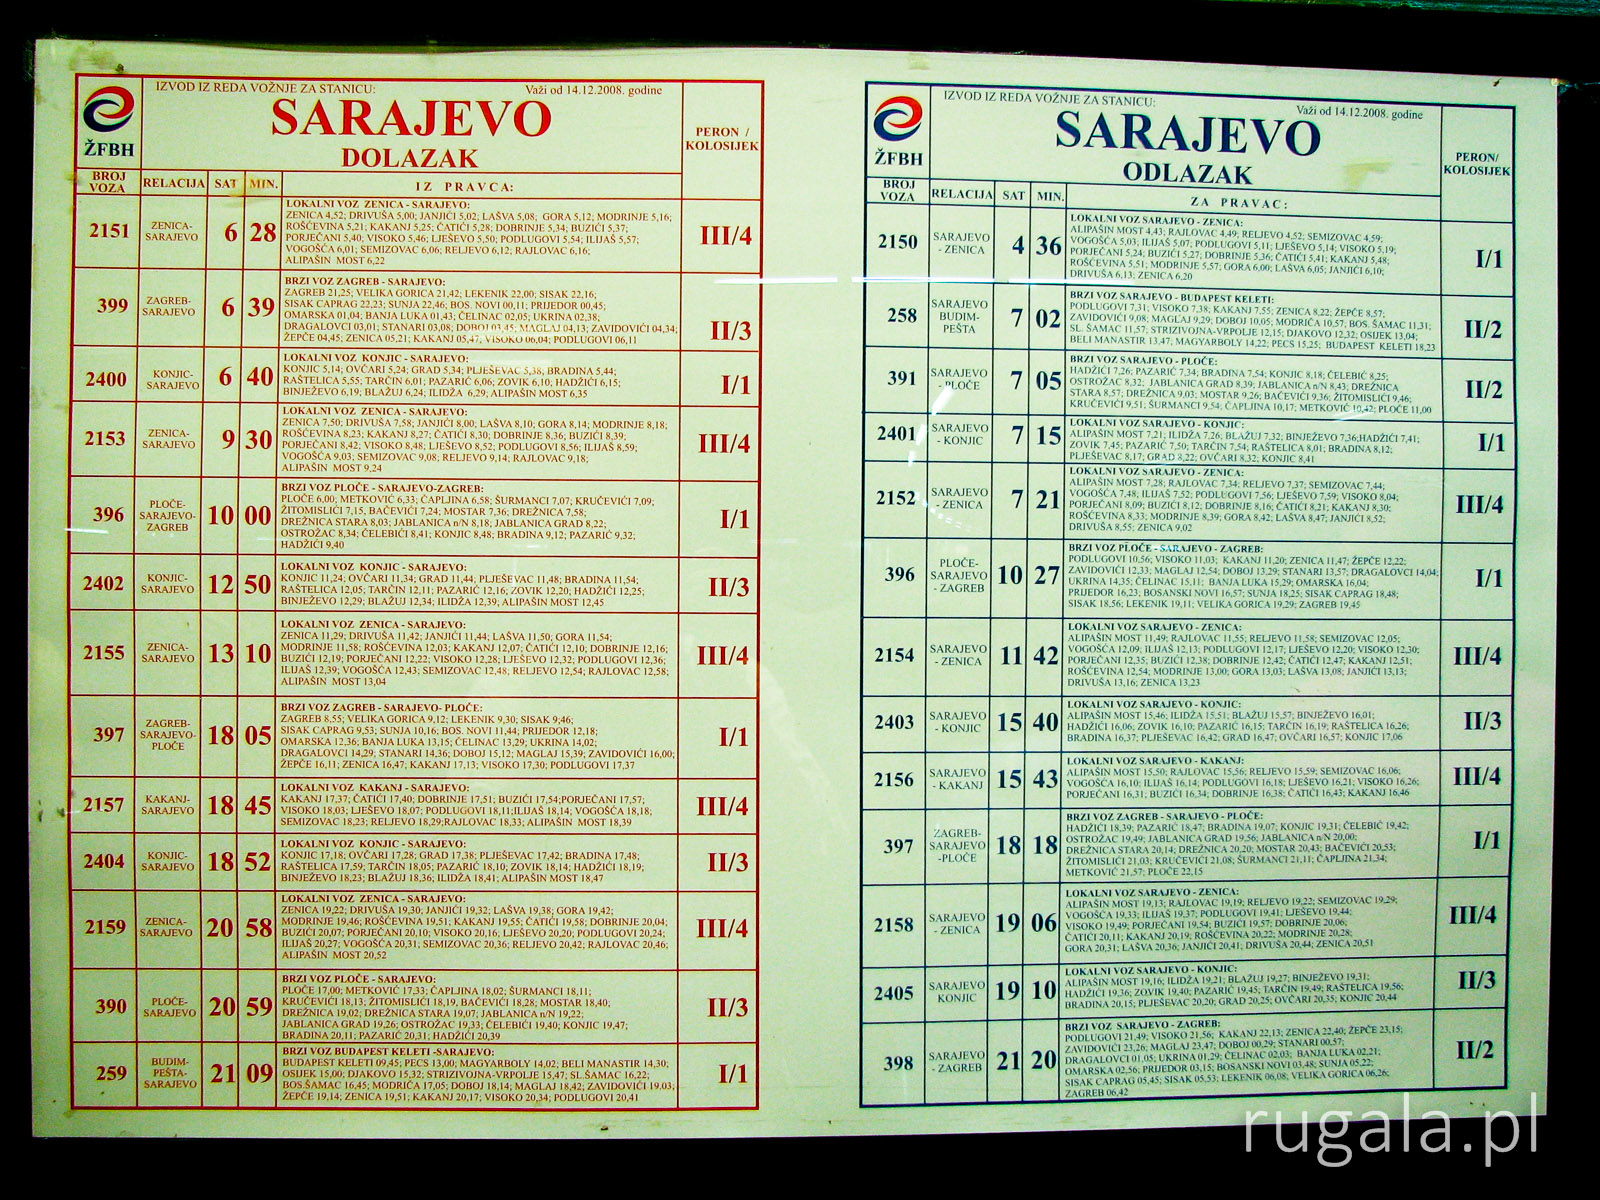 Sarajevo - pociągi (1)